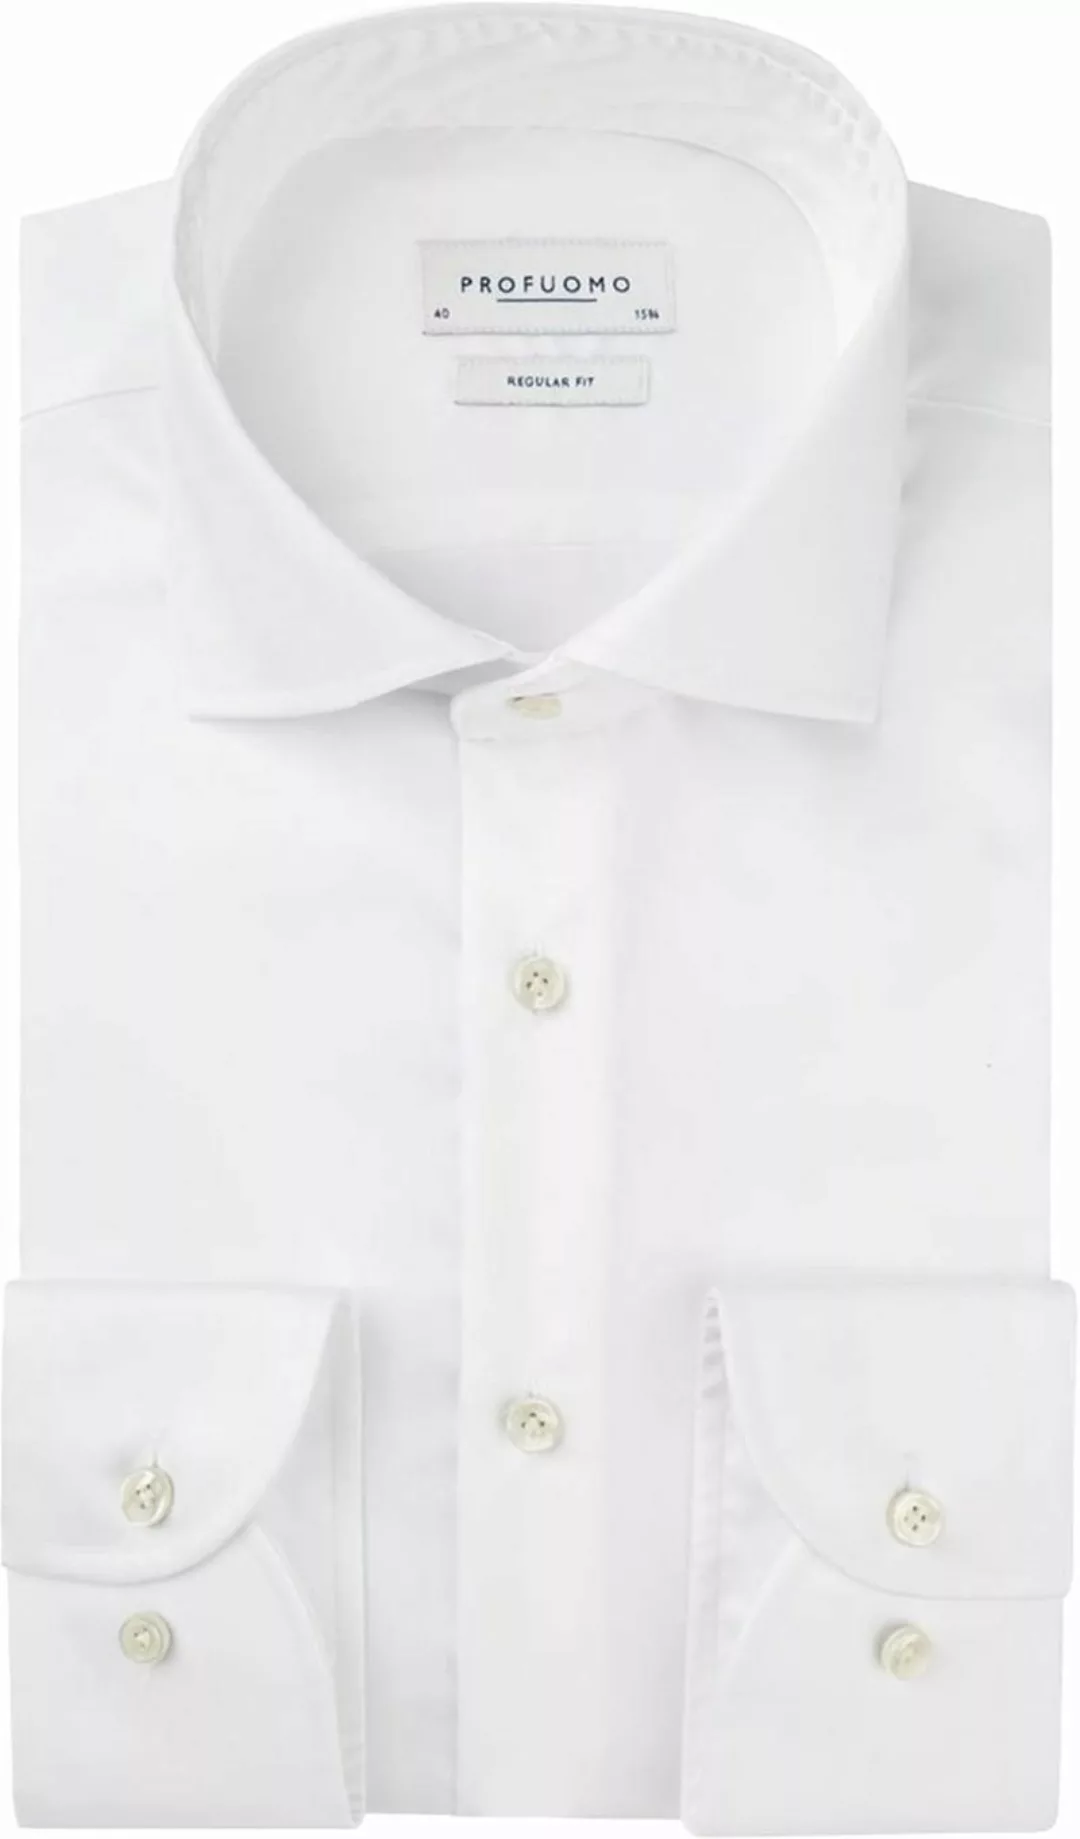 Profuomo Originale Hemd RF Weiß - Größe 41 günstig online kaufen